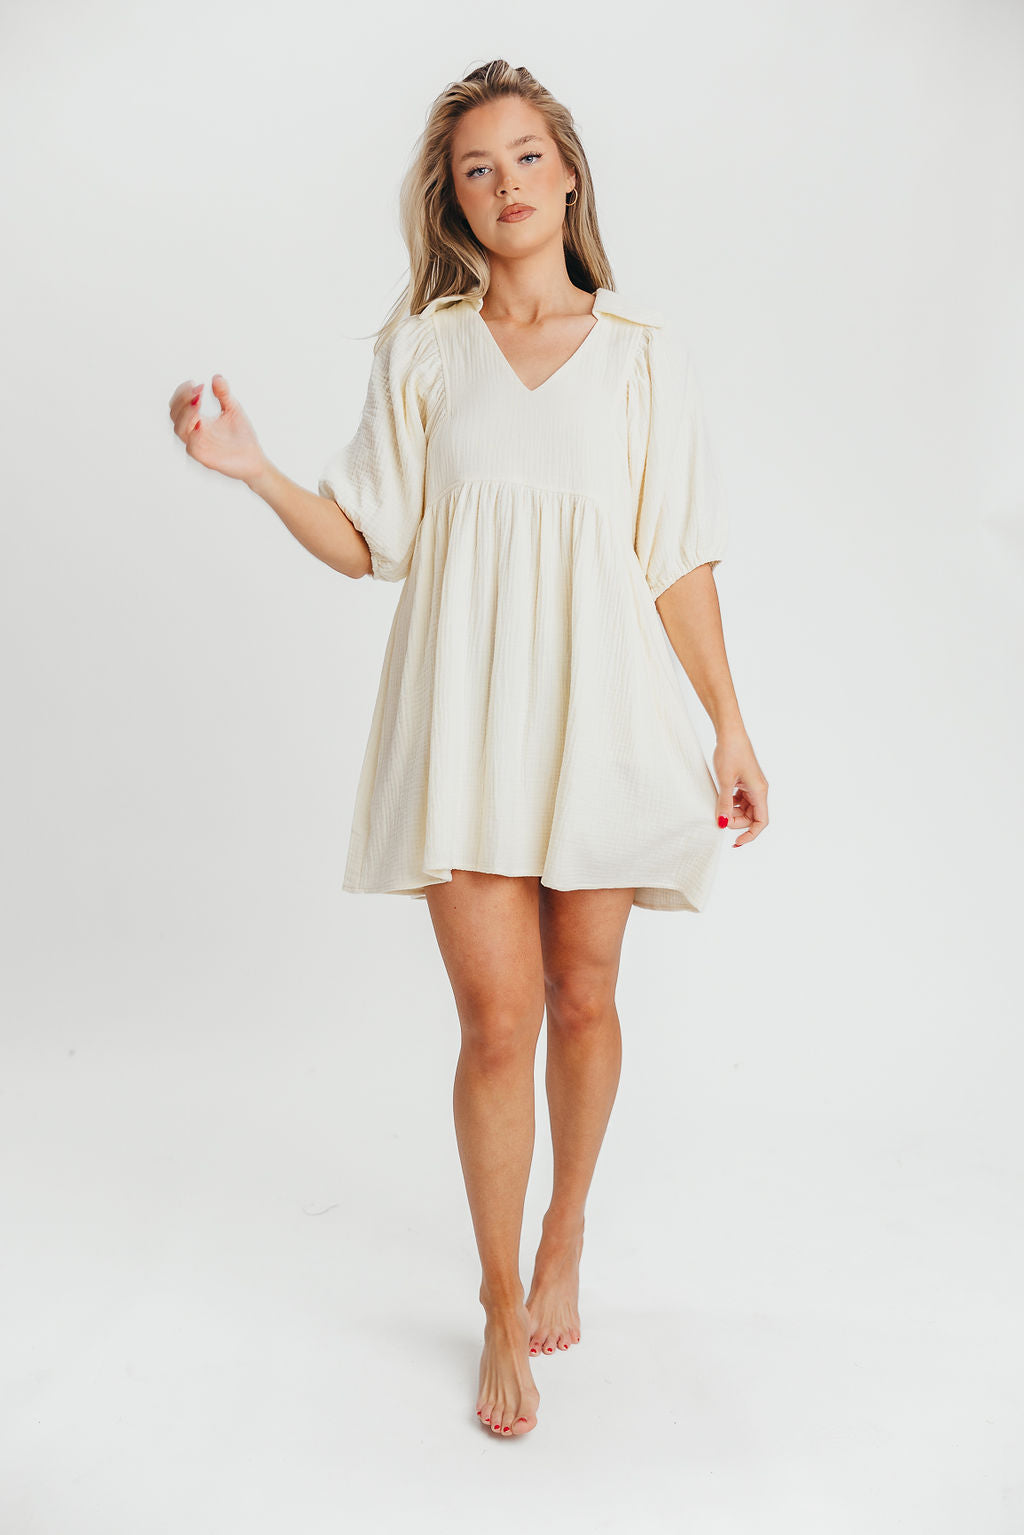 Tiffany 100% Cotton Mini Dress in Cloud